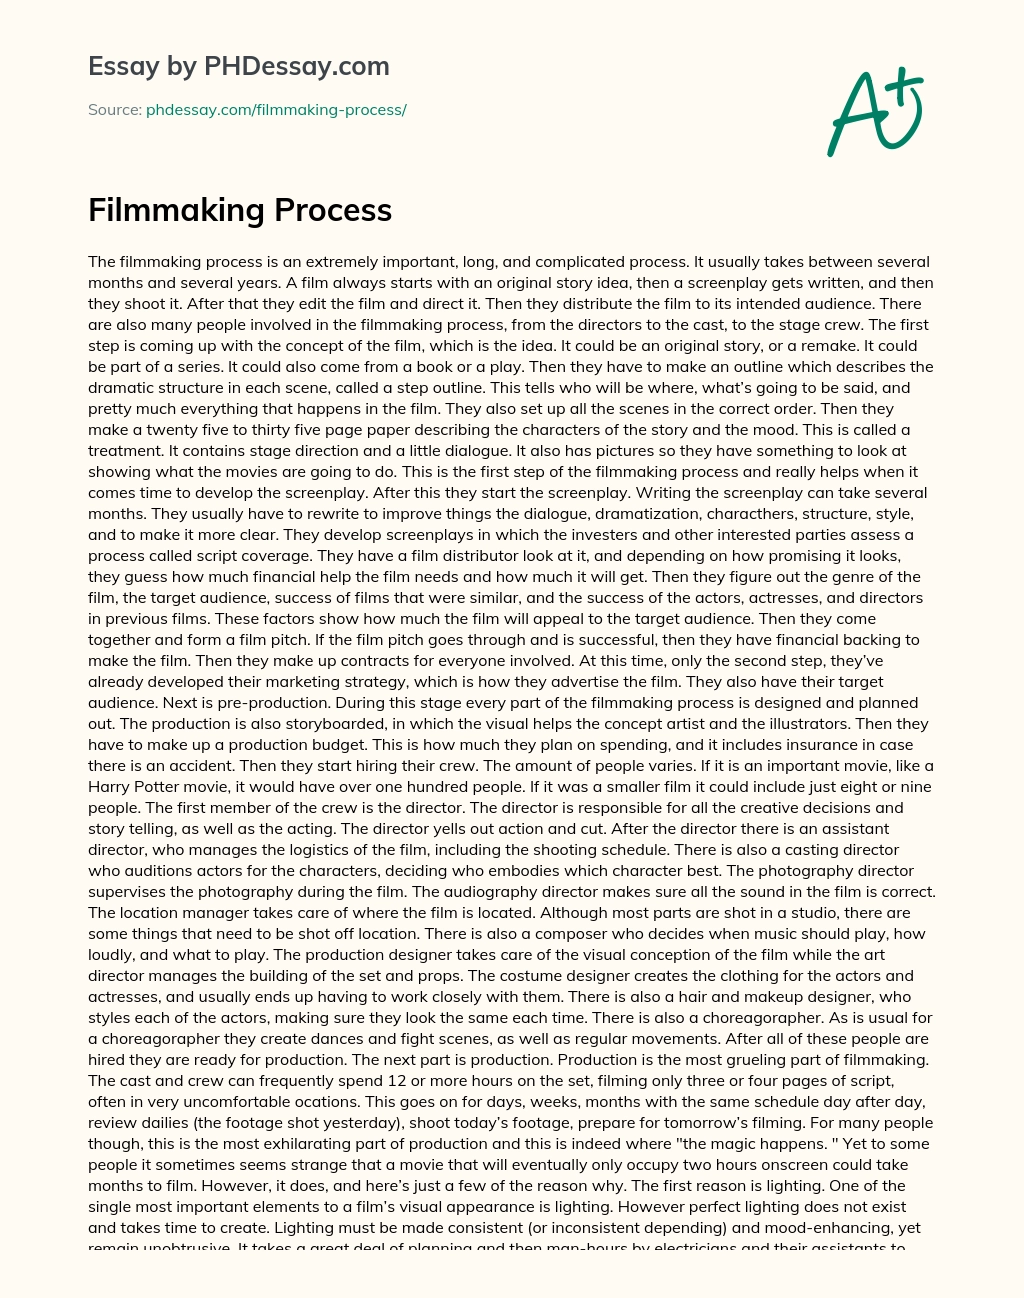 Filmmaking Process essay